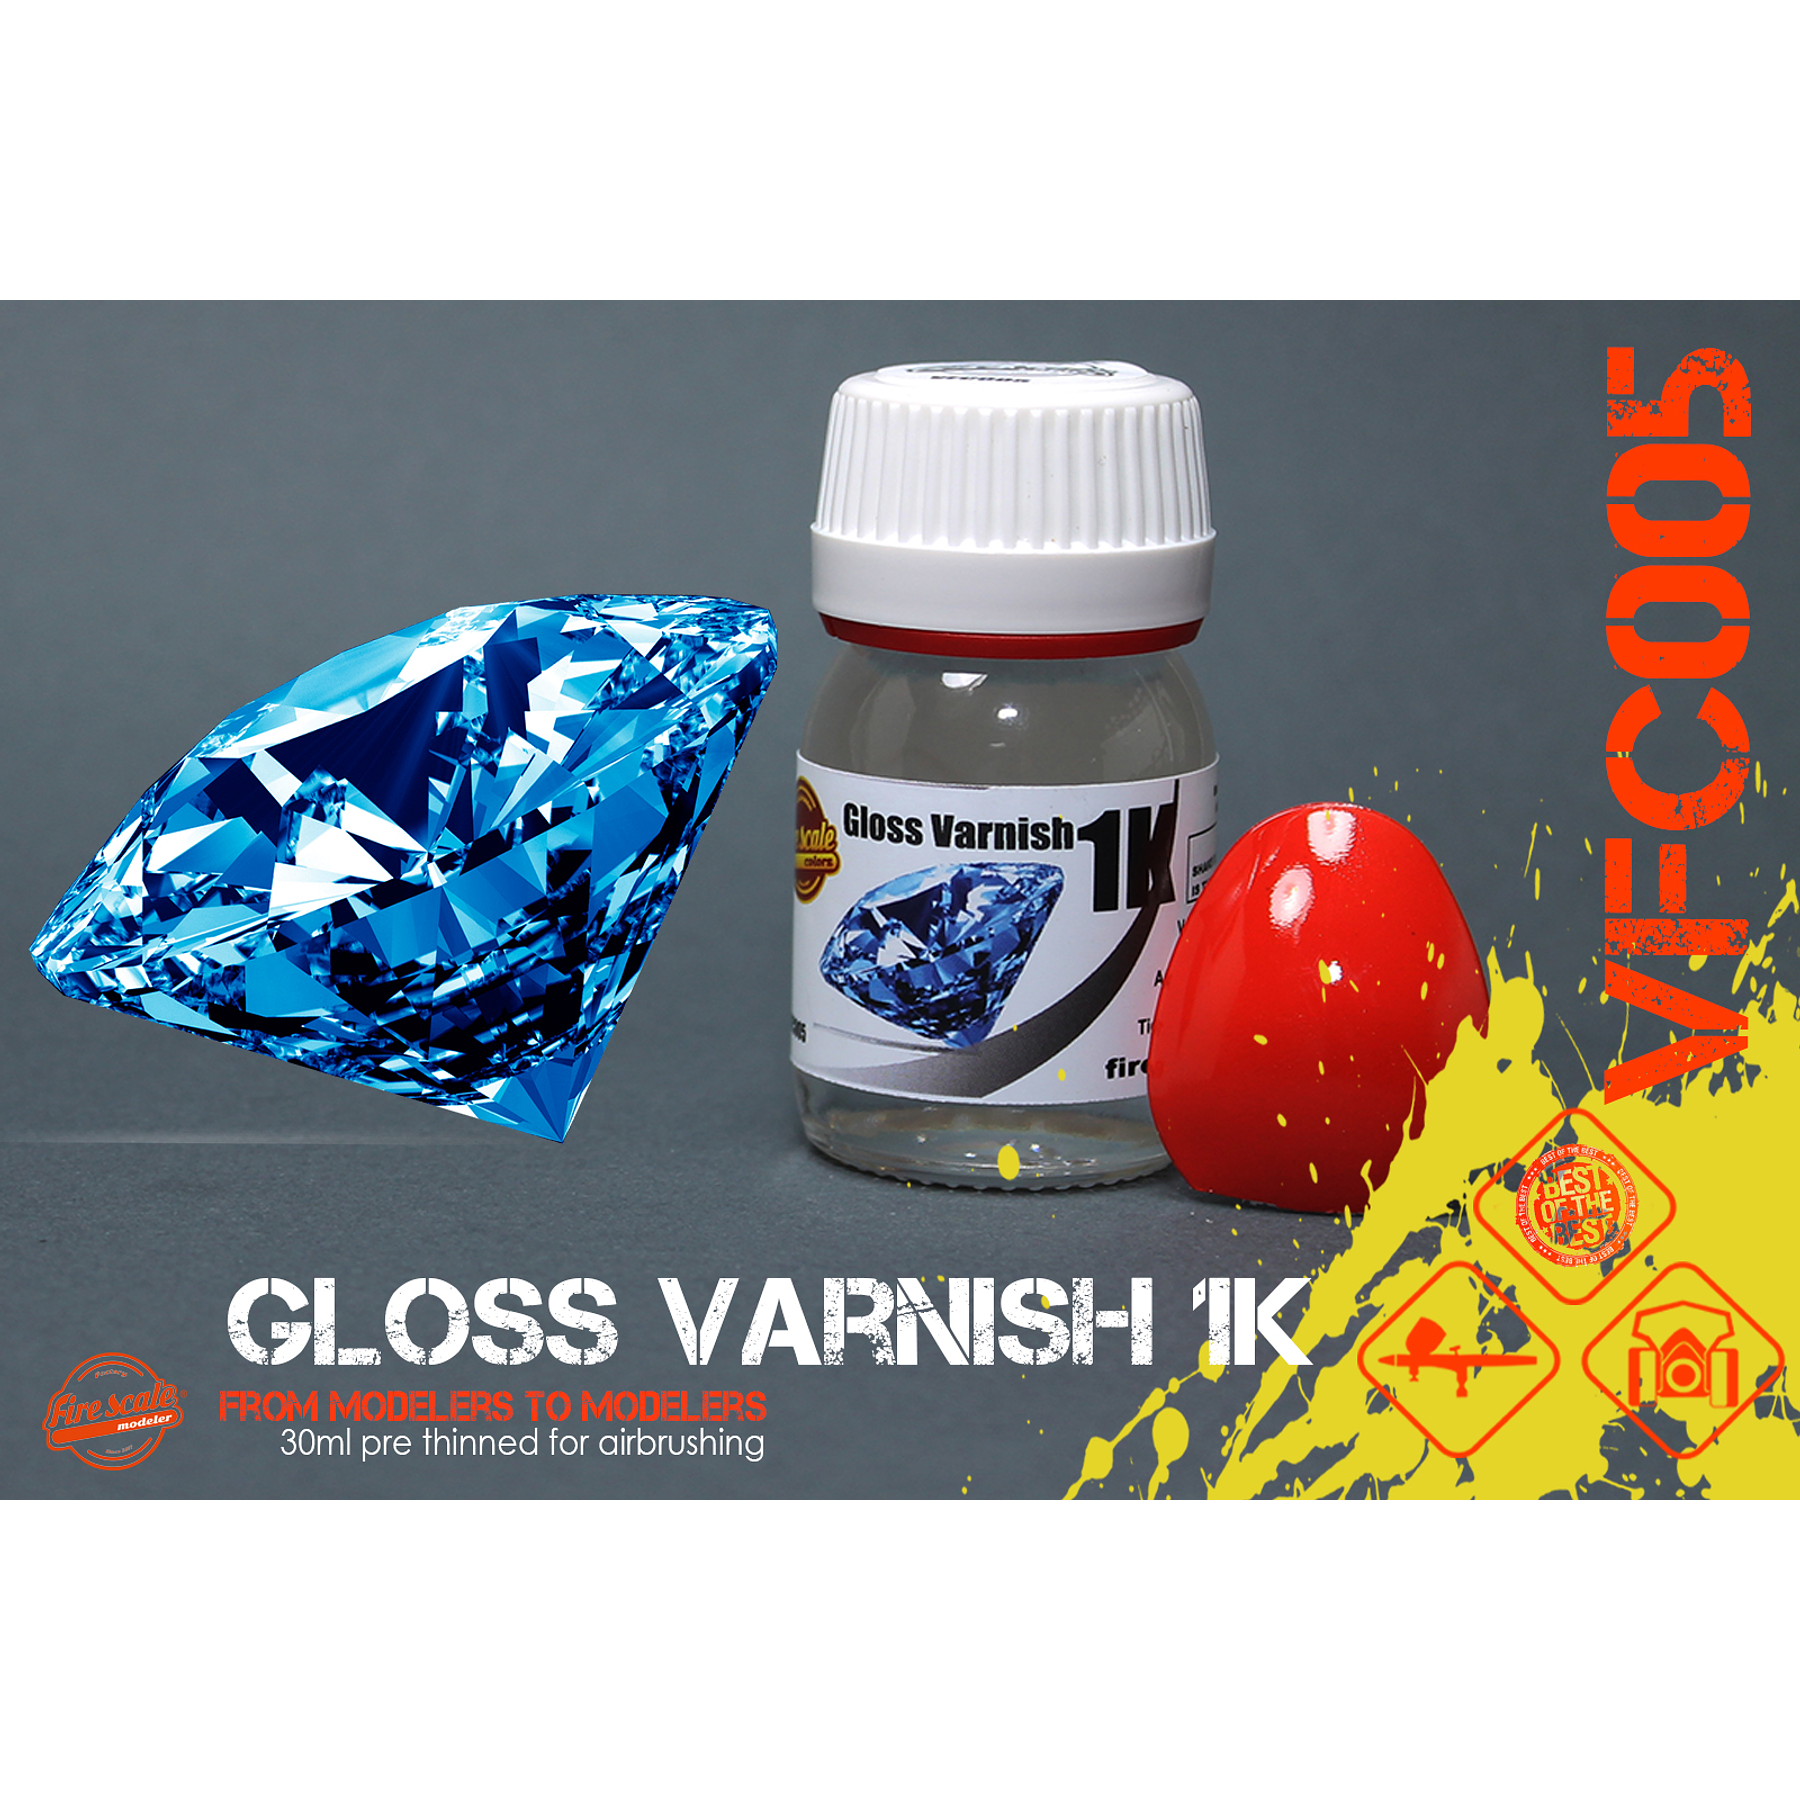 Gloss Varnish 1K